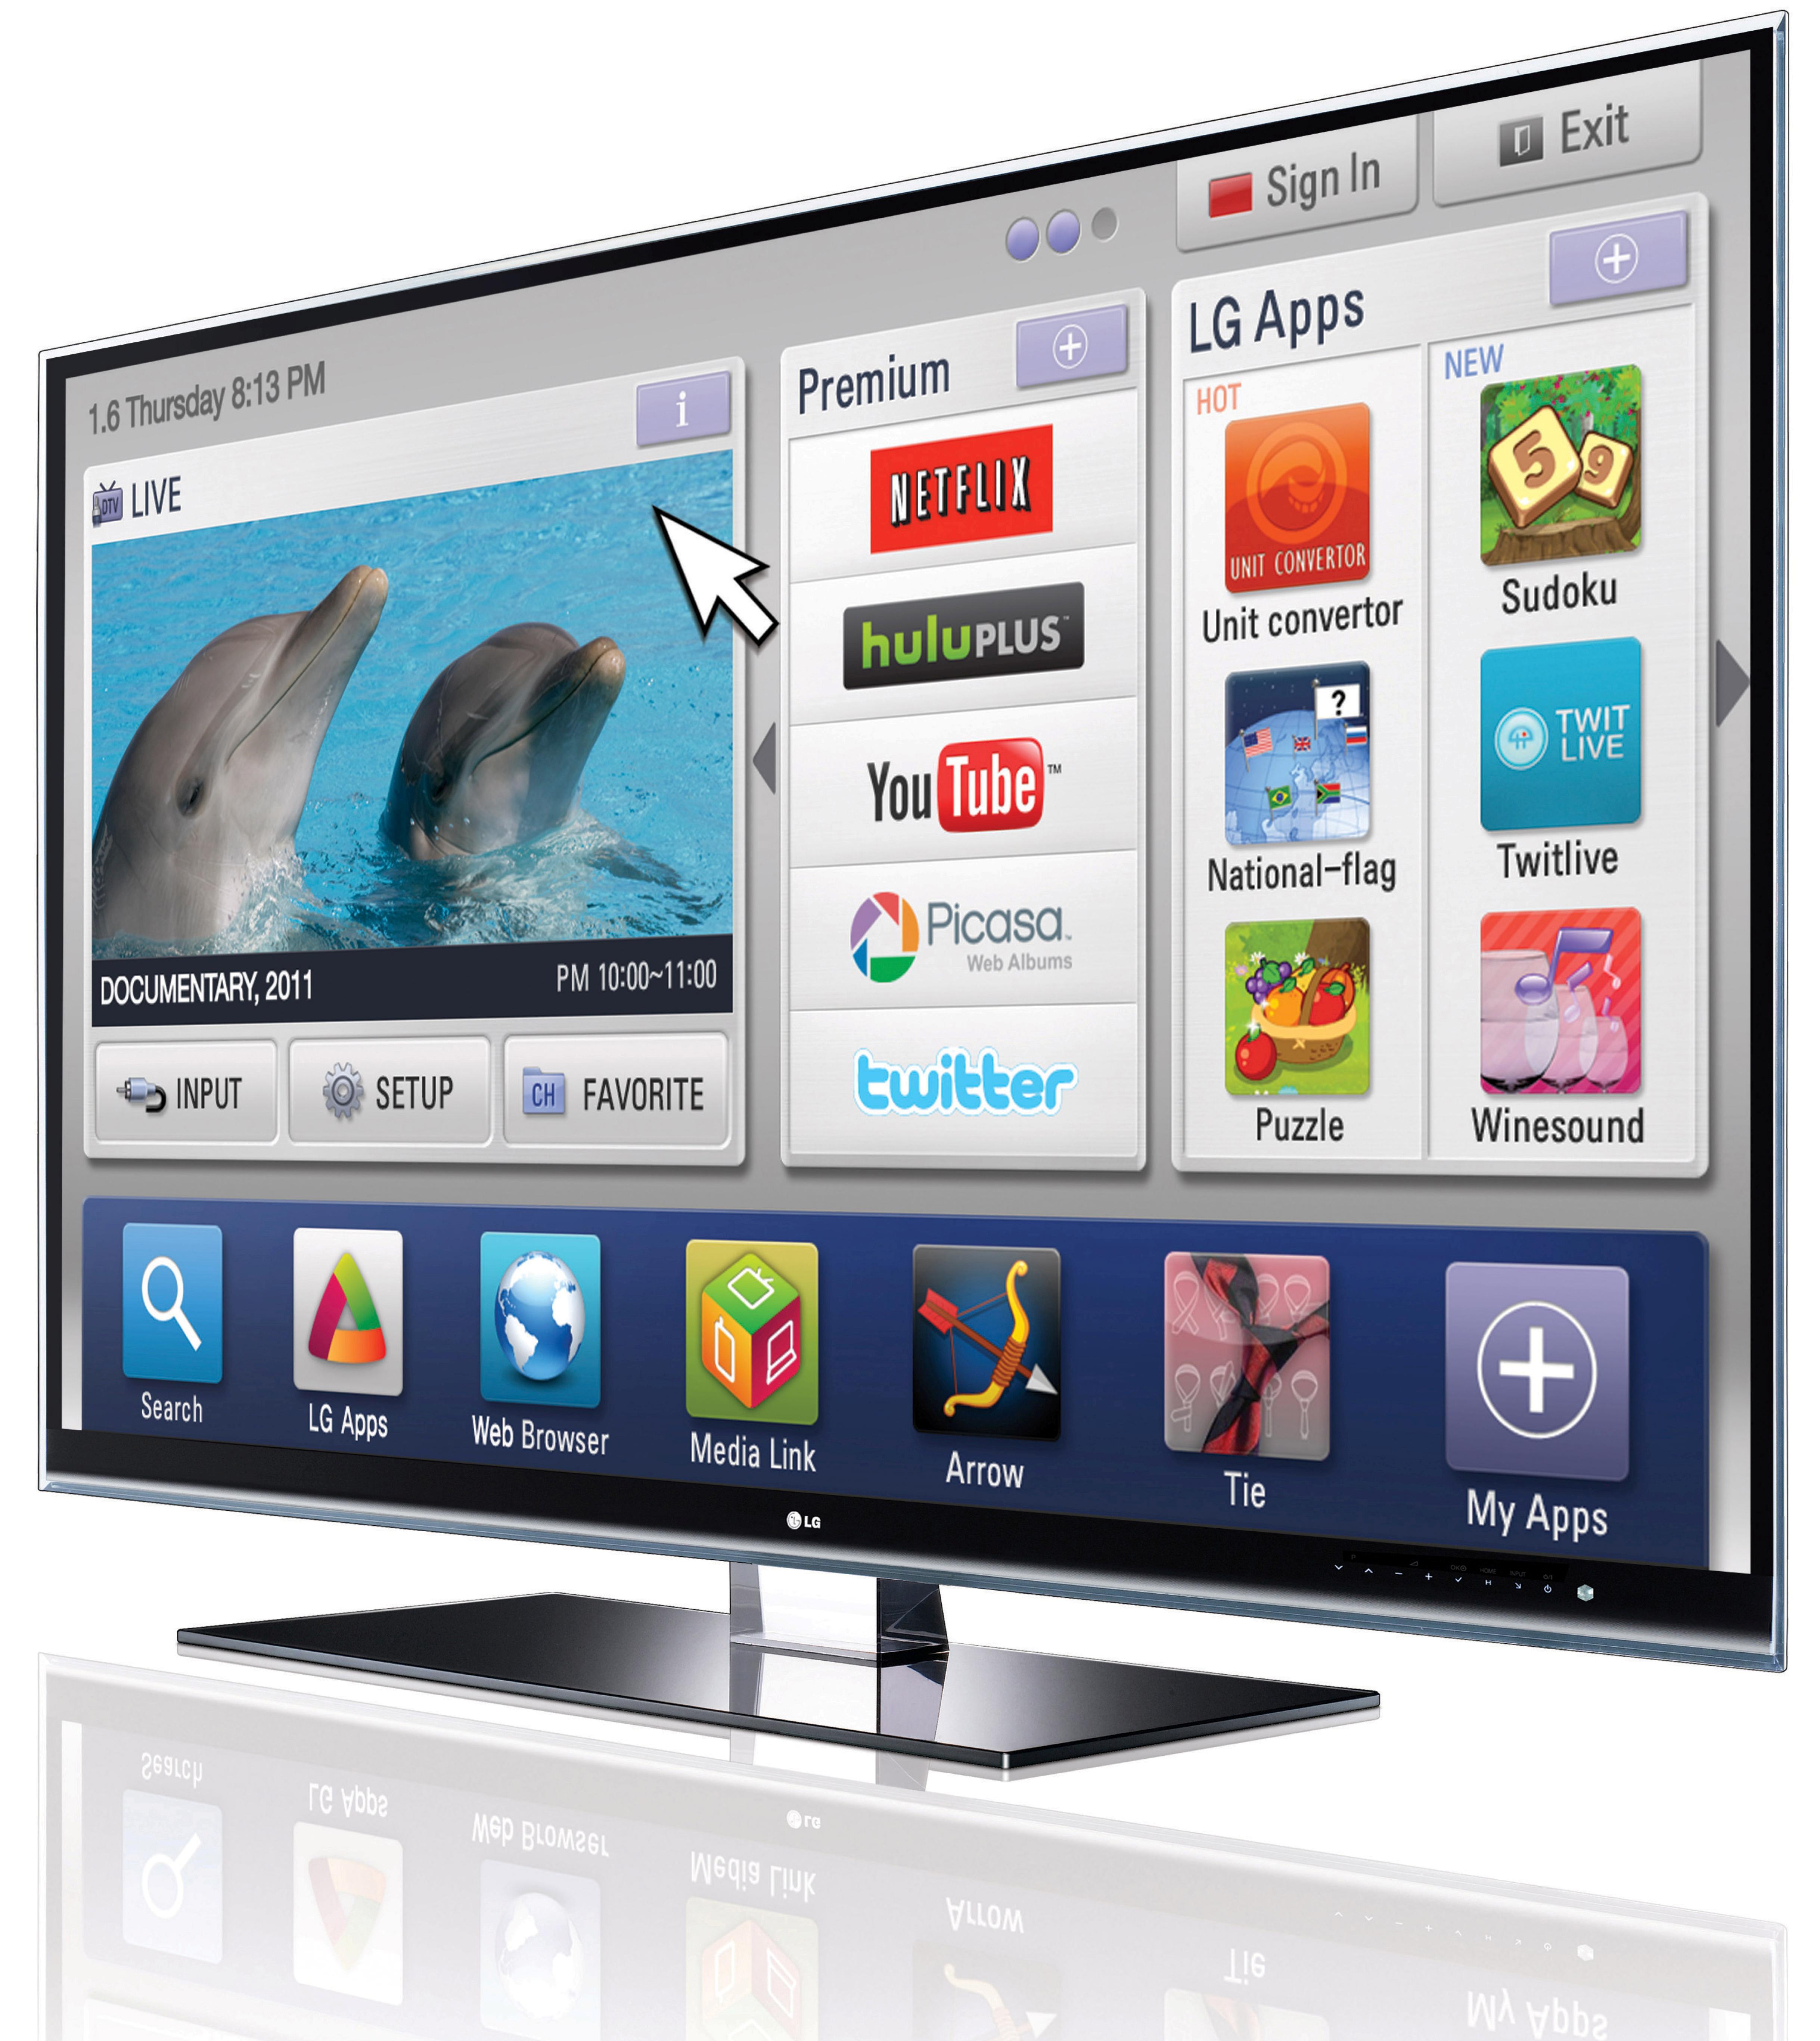 Ivi телевизоры samsung. LG Smart TV 2011. Телевизор LG Smart TV. LG Smart TV 2013. Телевизор LG 2011 Smart TV.